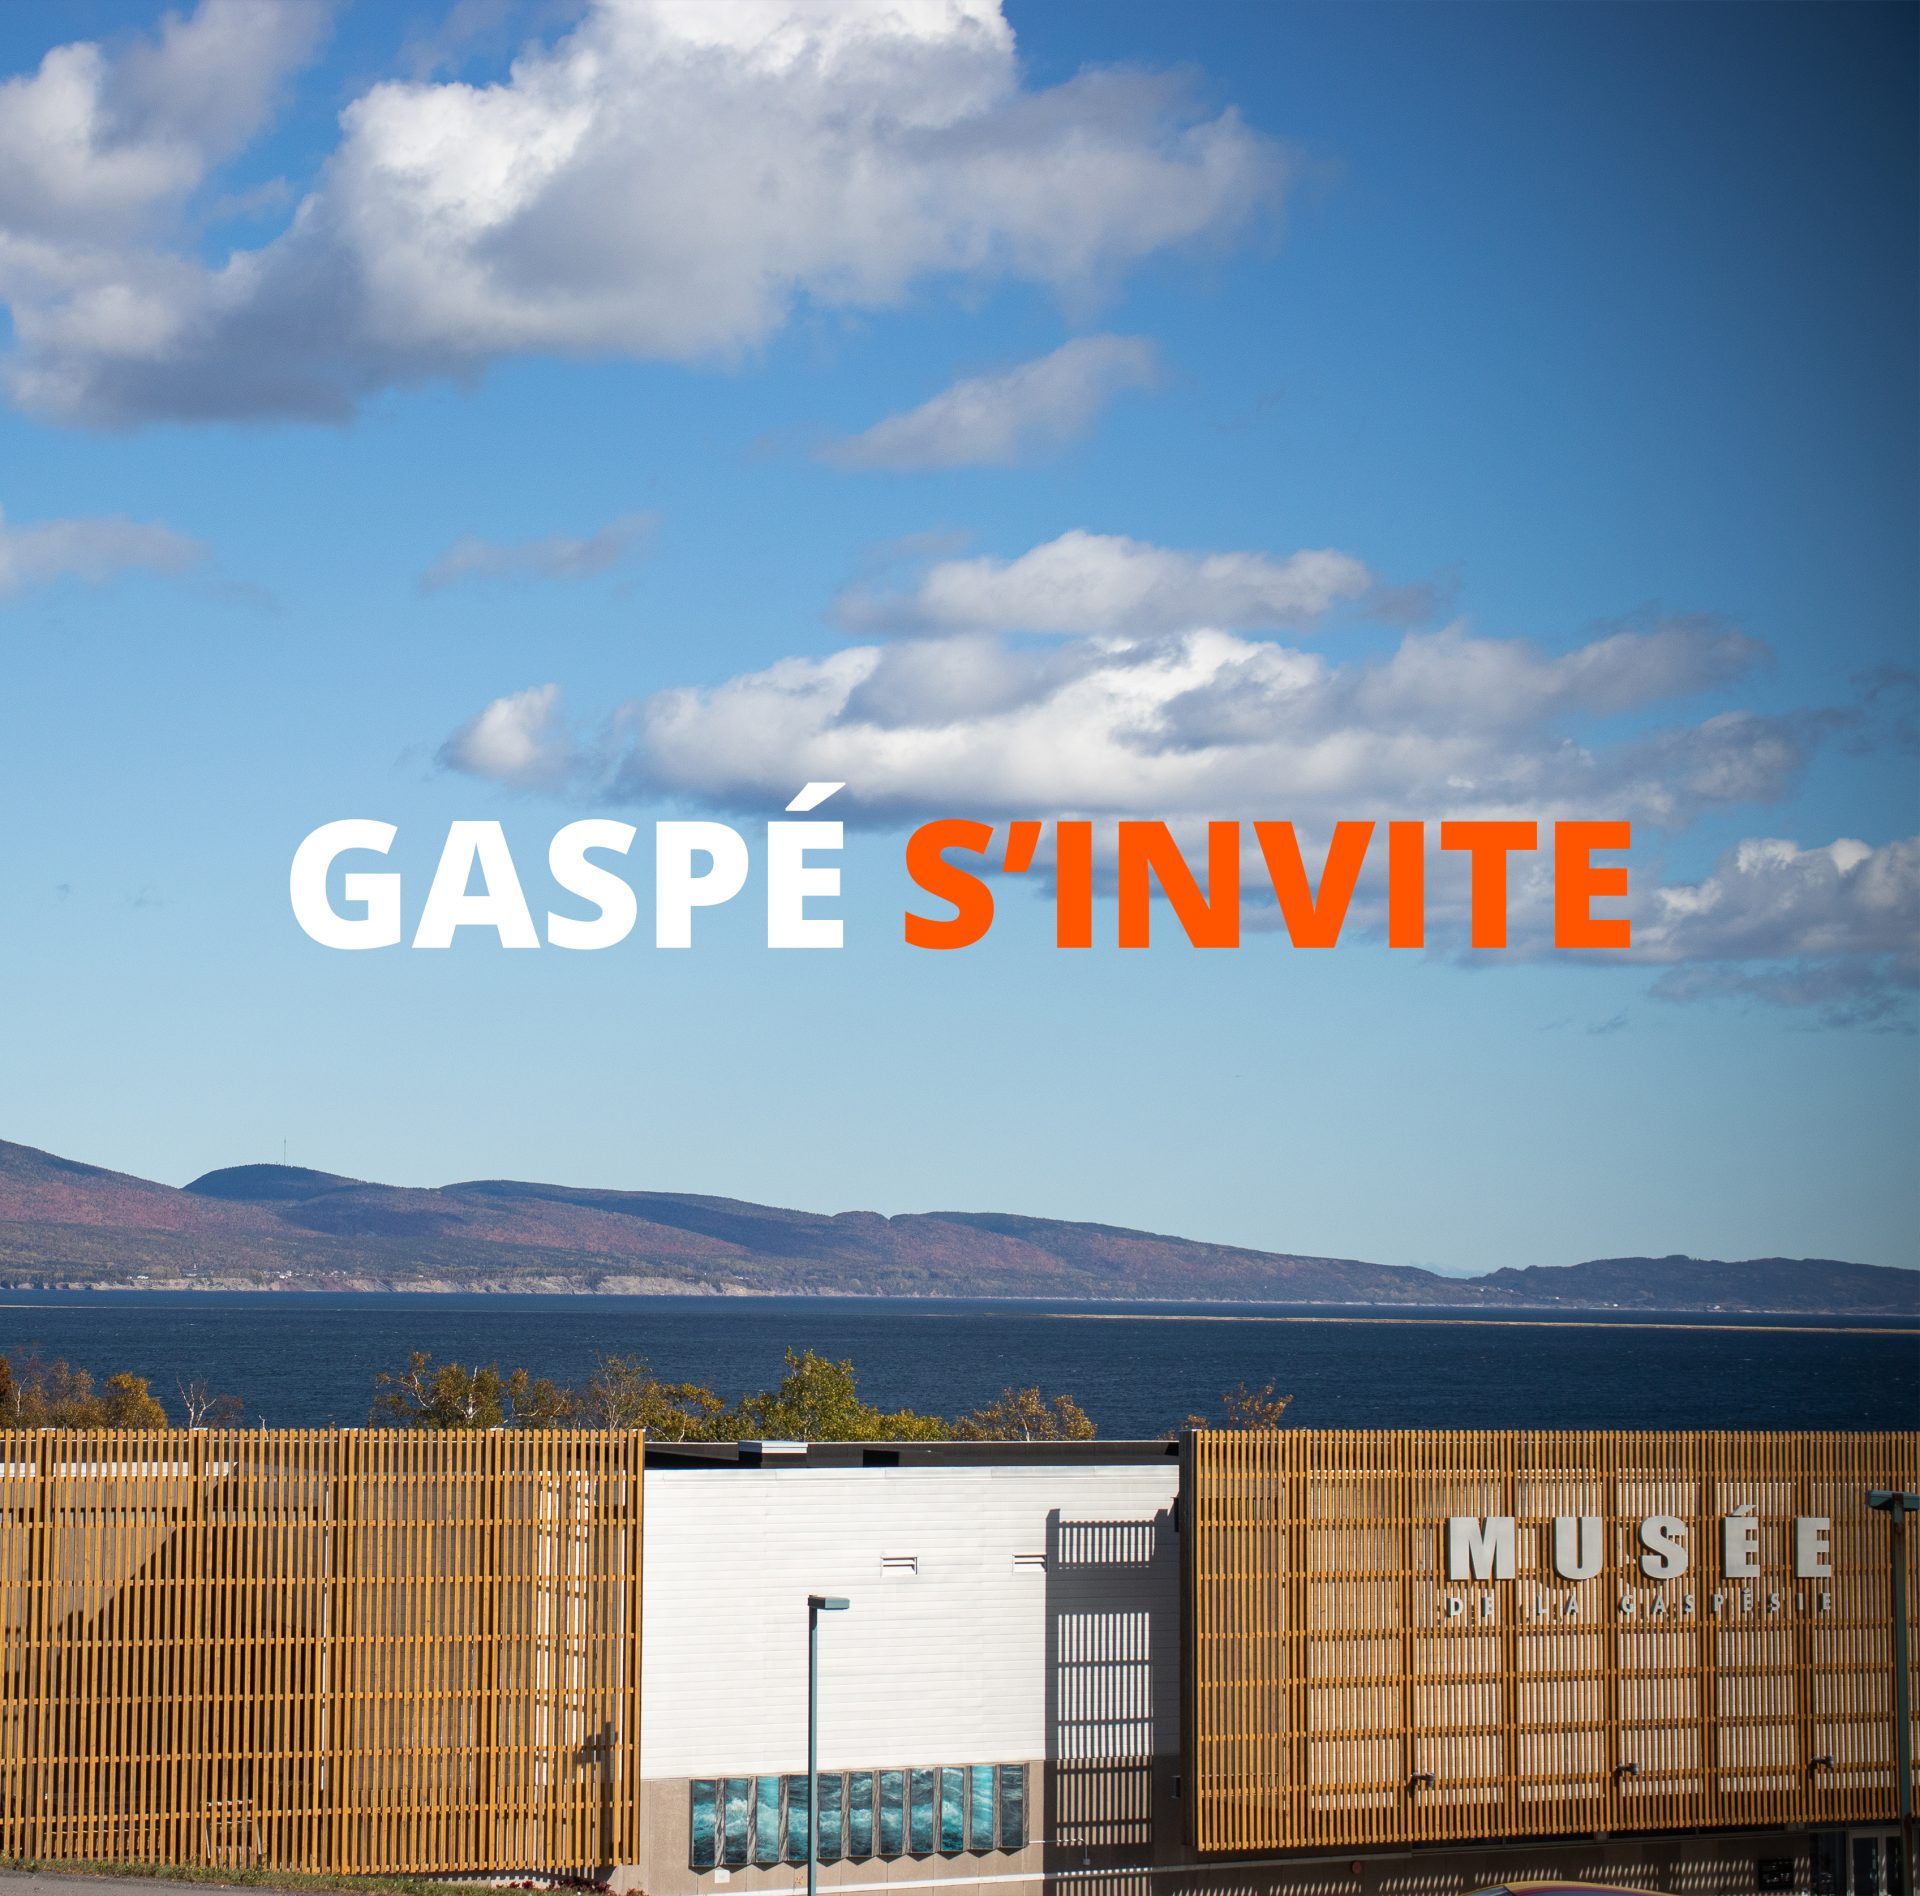 Gaspé s’invite : Visite au Musée de la Gaspésie